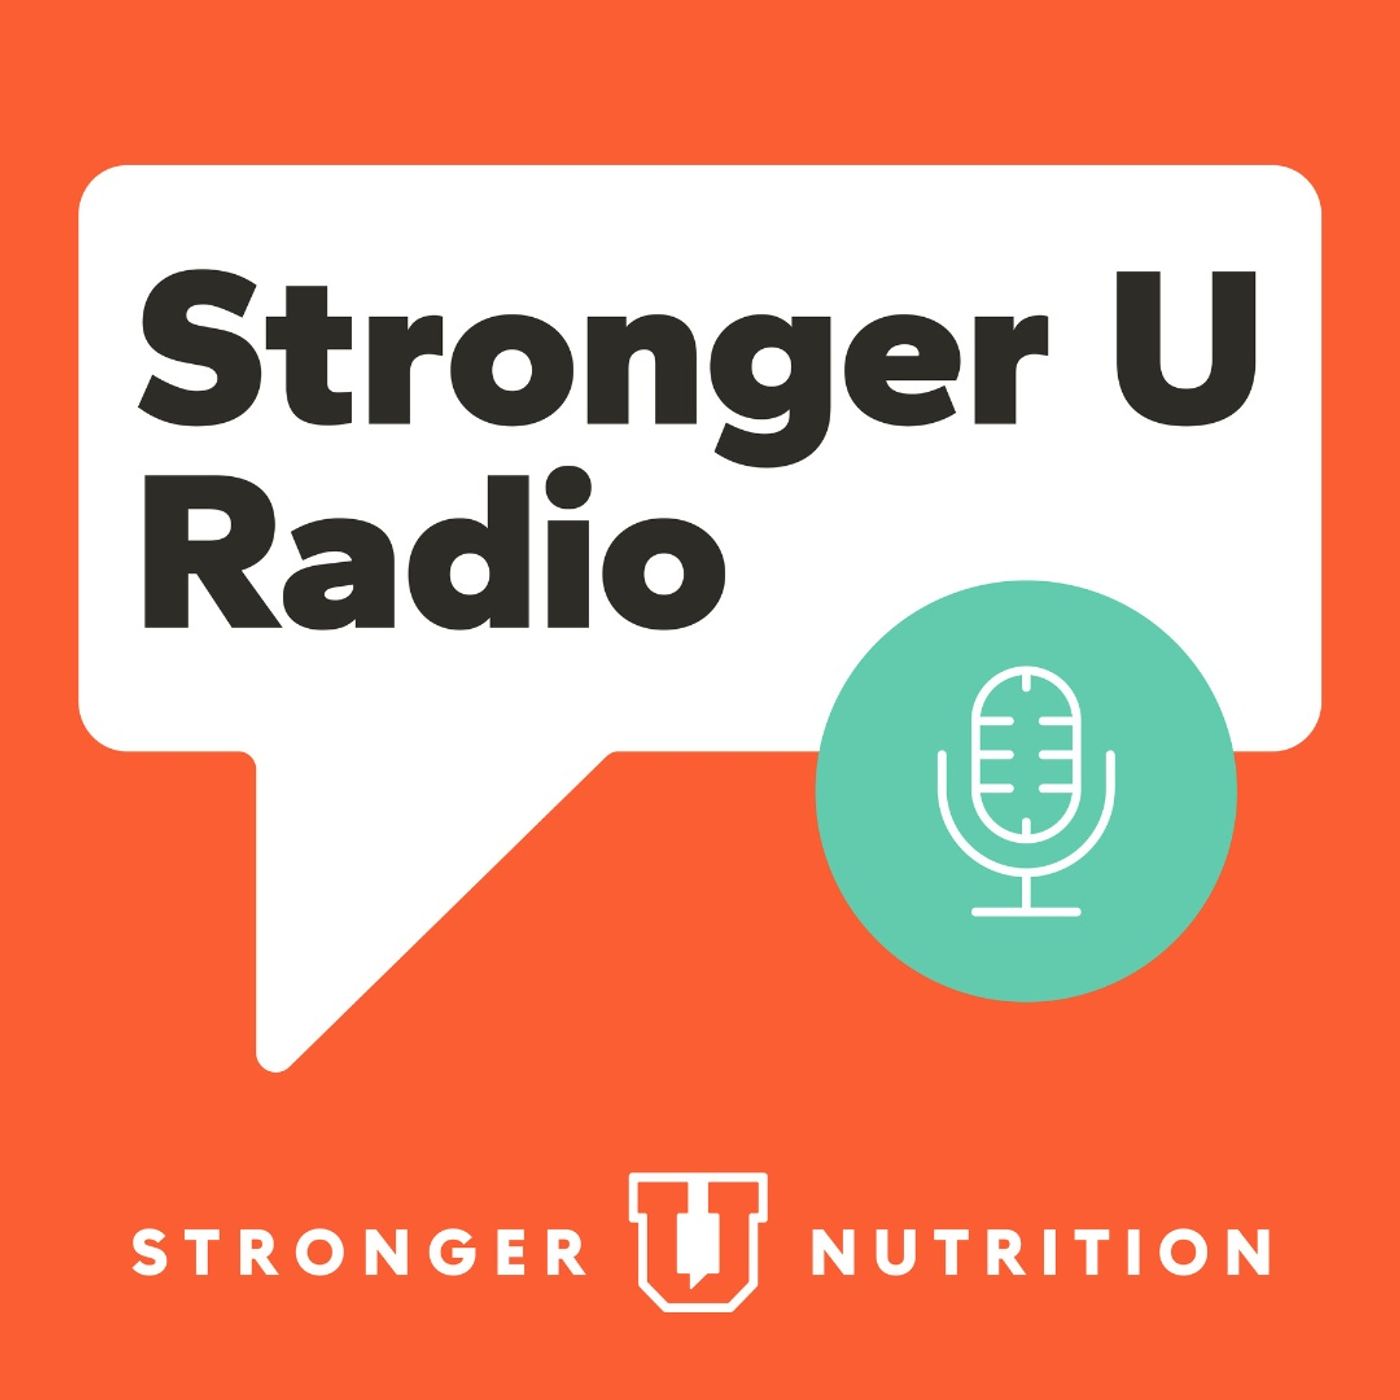 Stronger U Radio with Mike Doehla